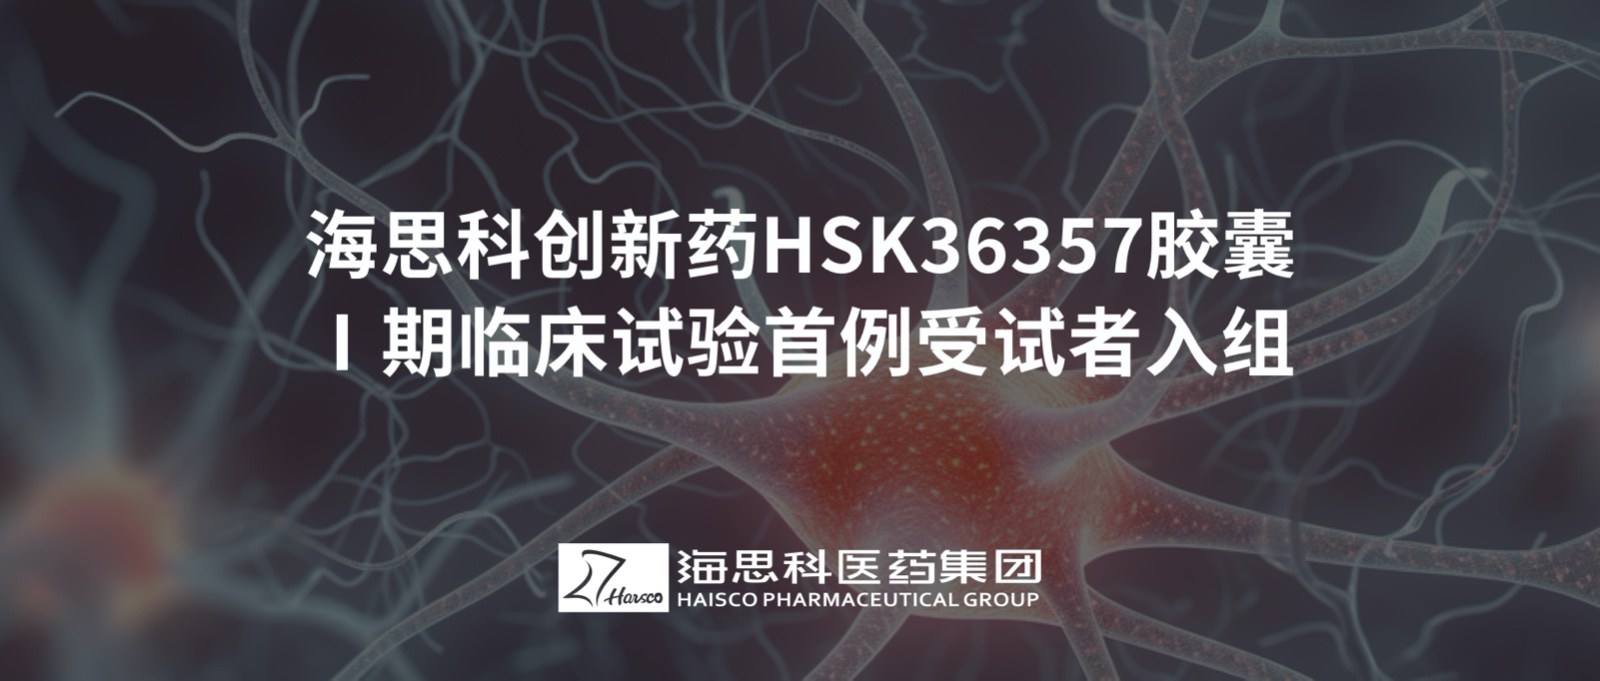 2138太阳诚娱乐官网创新药HSK36357胶囊Ⅰ期临床试验首例受试者入组